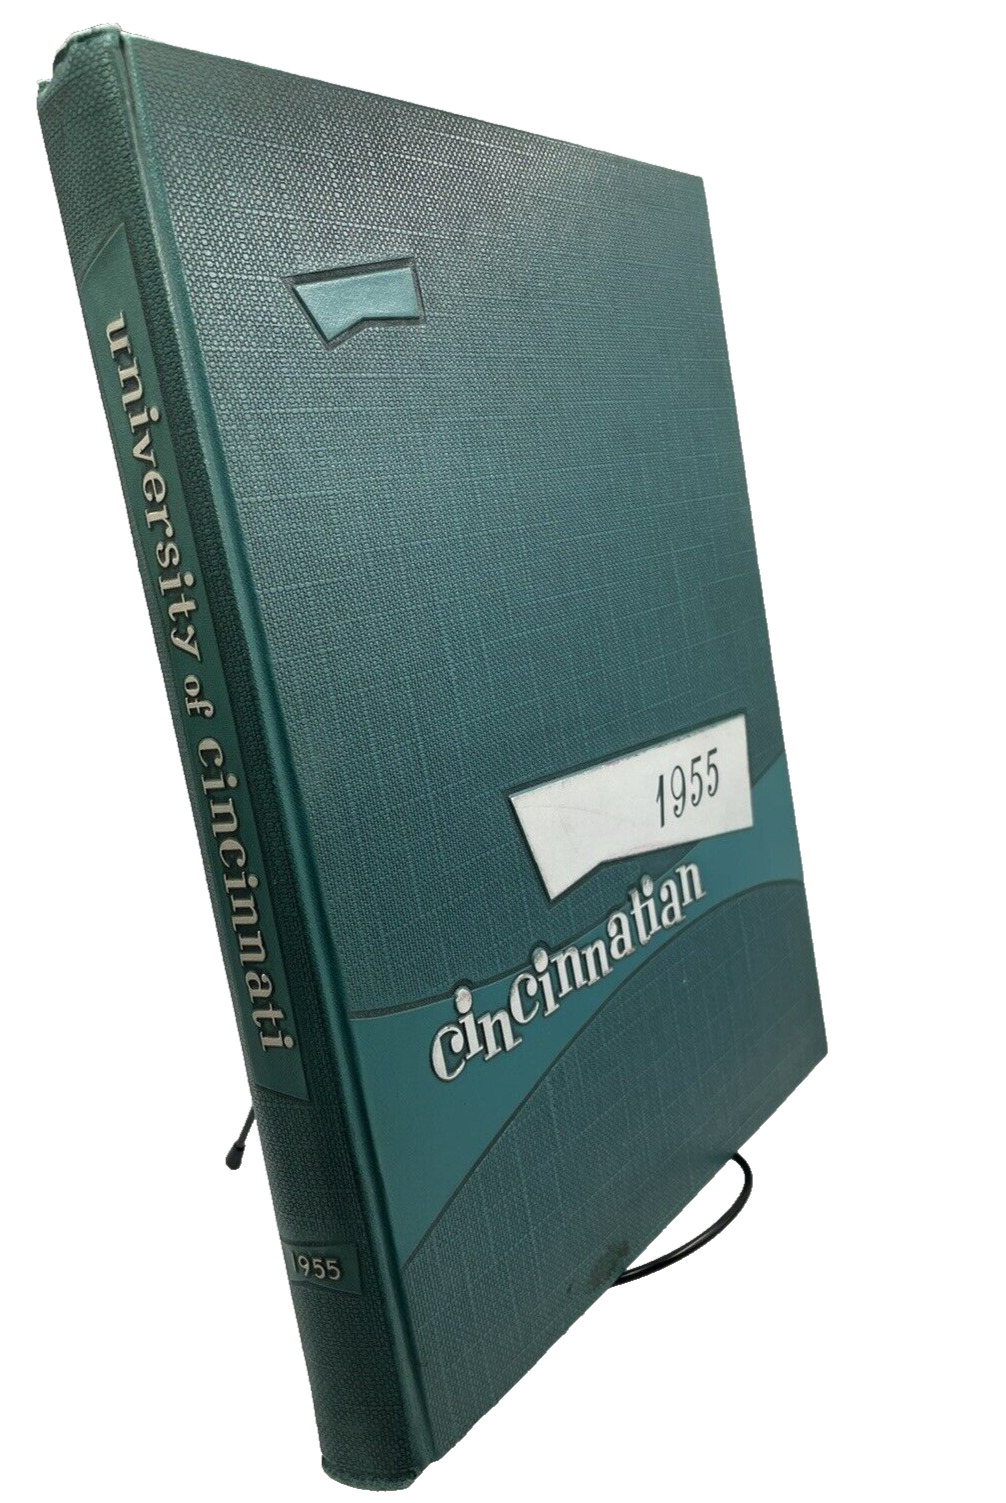 1955 University of Cincinnati Vol. 62 Yearbook 364 Pages Pre-owned